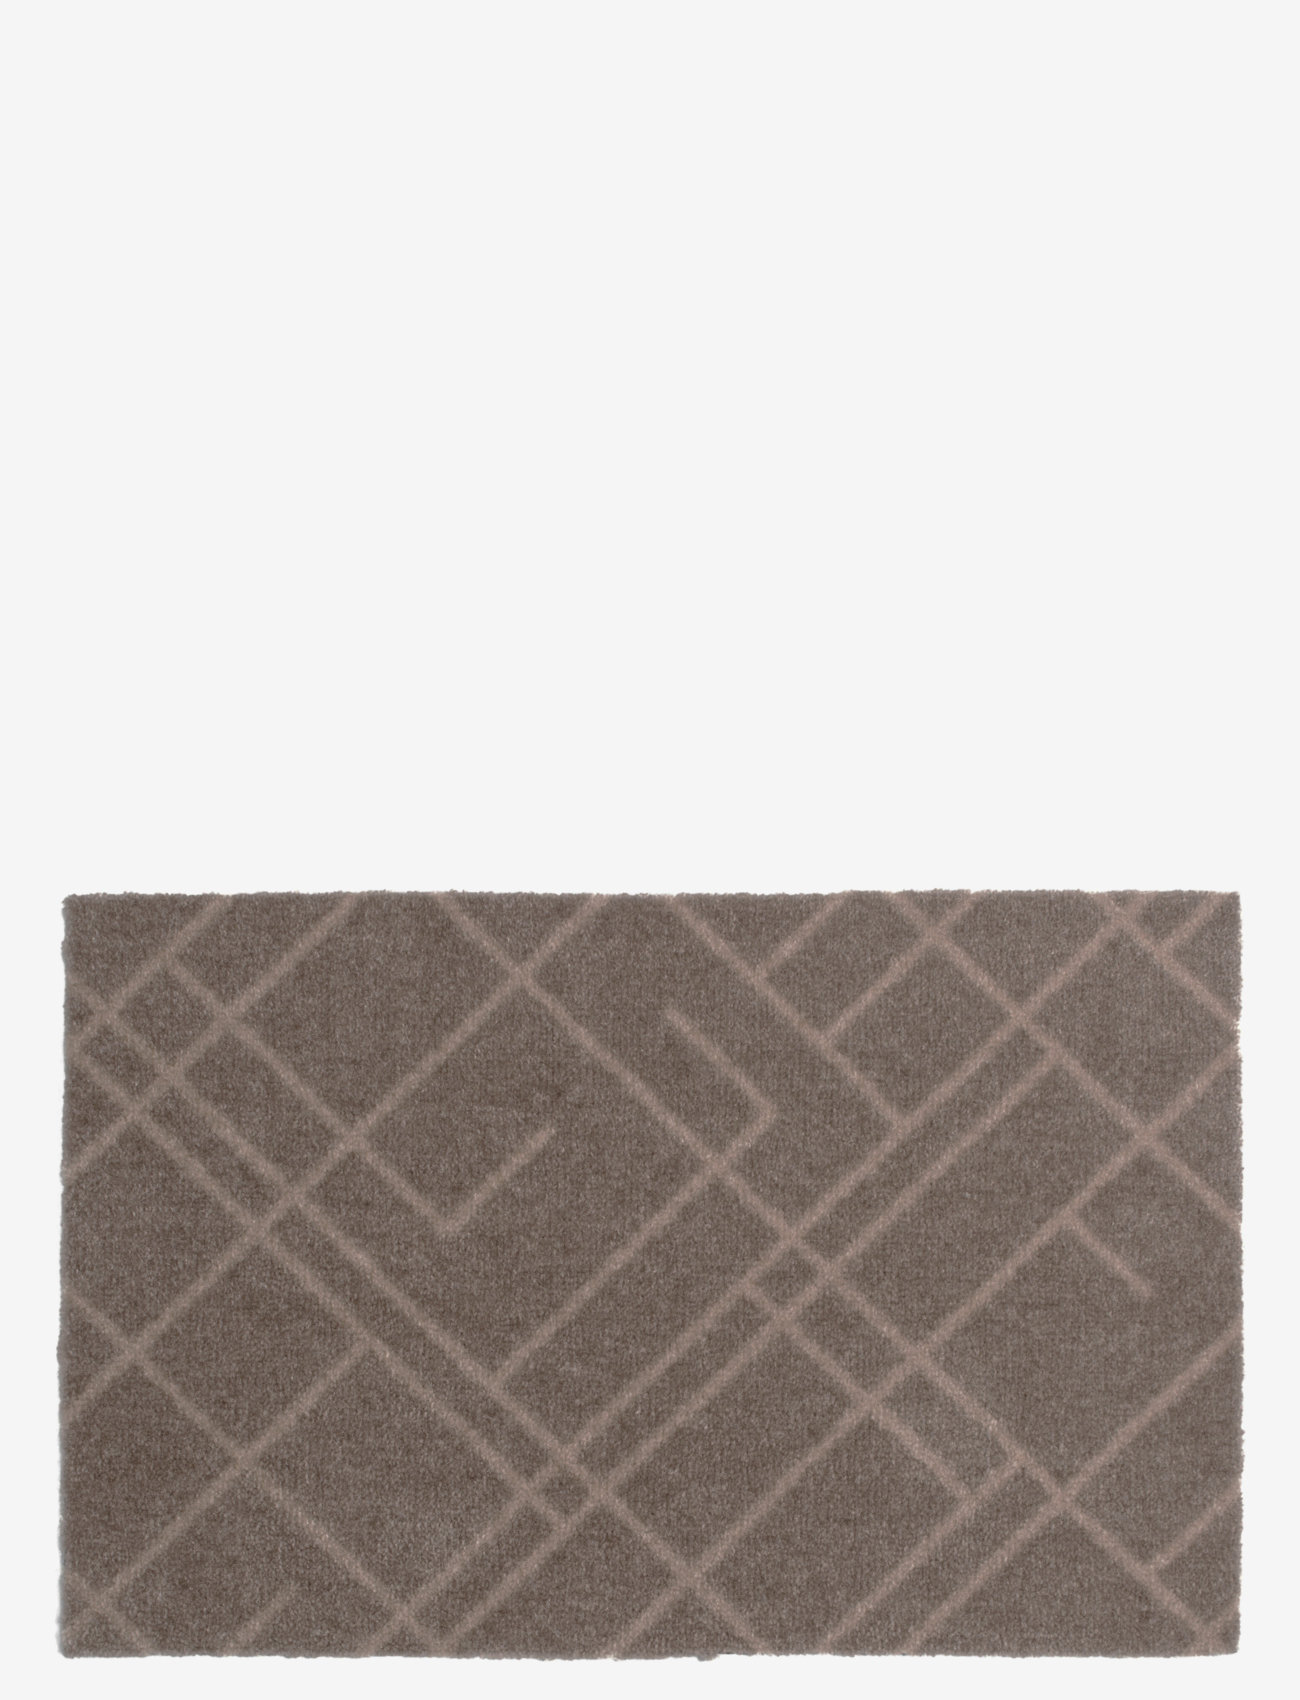 tica copenhagen - Floormat polyamide, 60x40 cm, lines design - lägsta priserna - beige/sand - 0